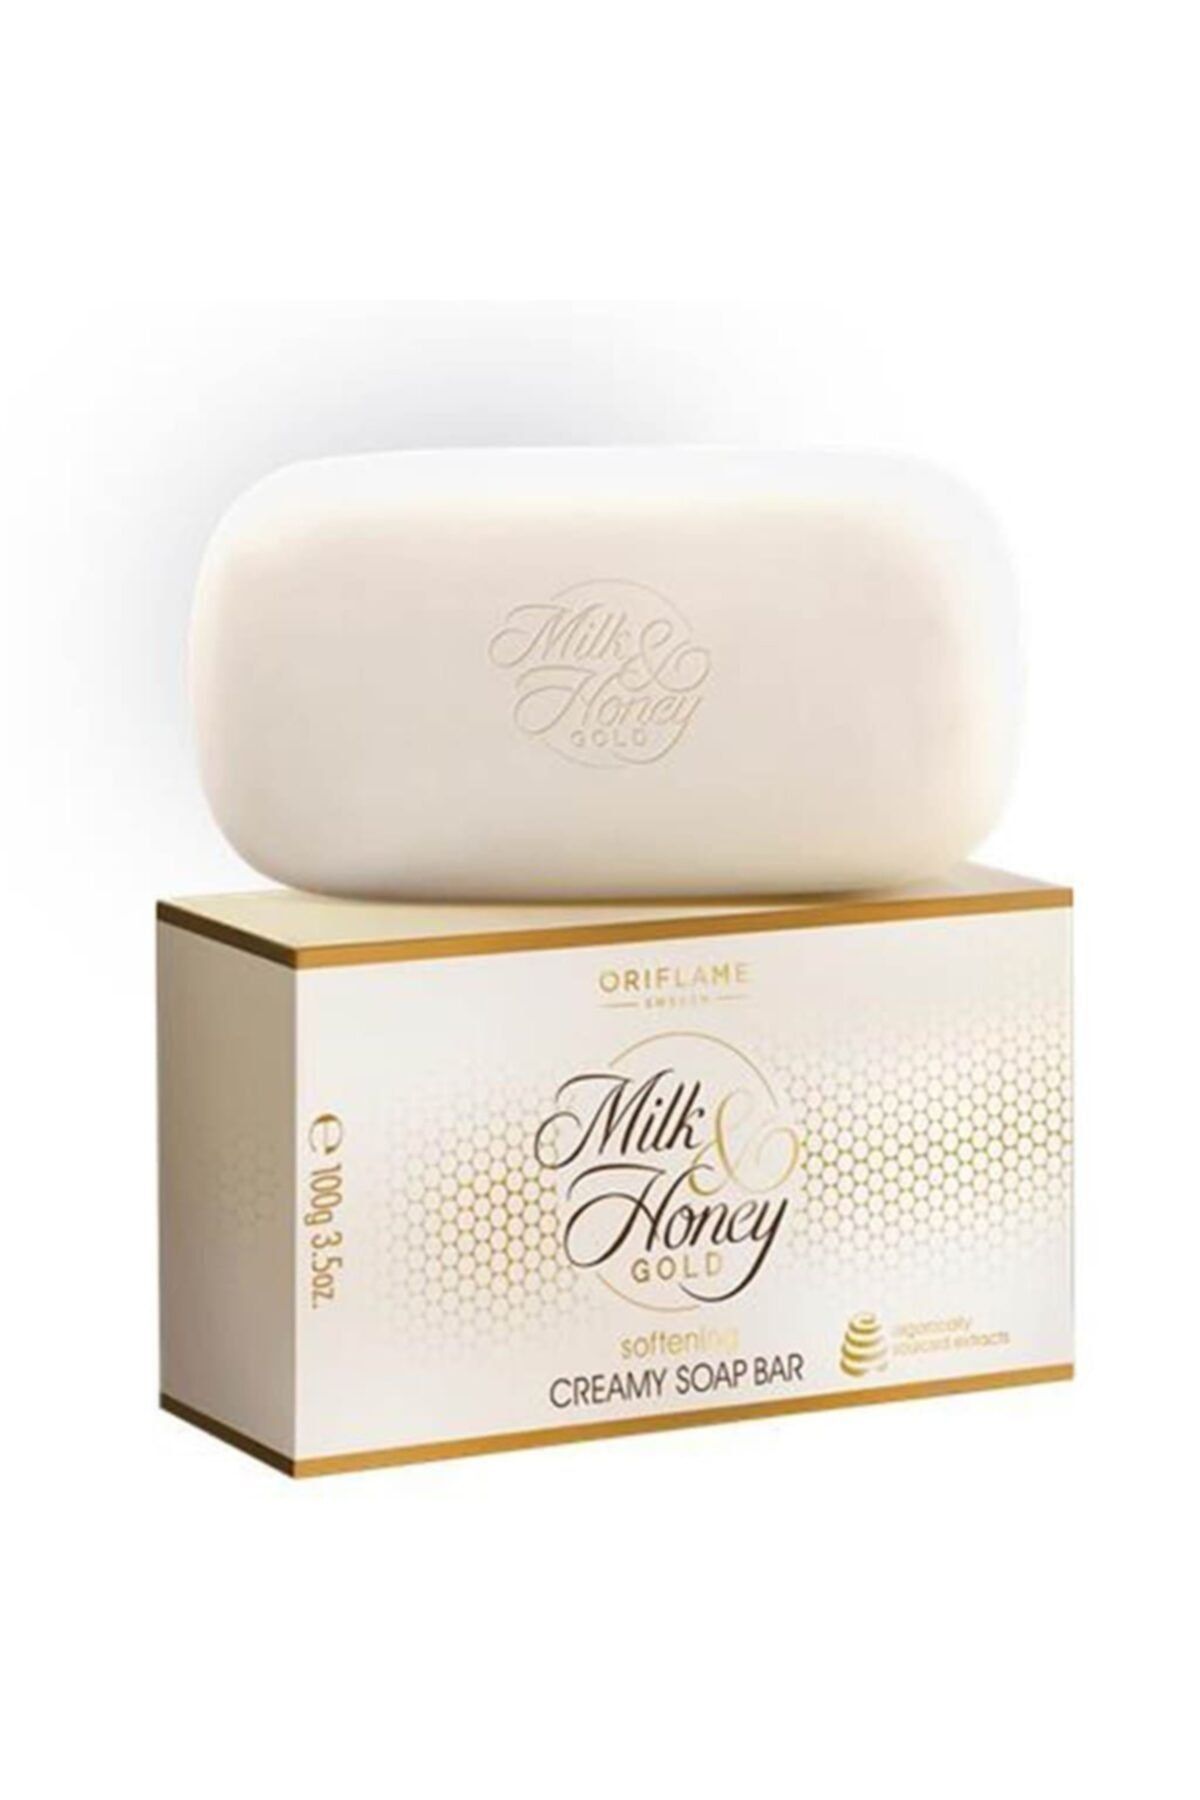 Göçmen Tuhafiye Orıflame Milk Honey Ballı Sütlü Sabun 75 Gr (banyo Sabunu)